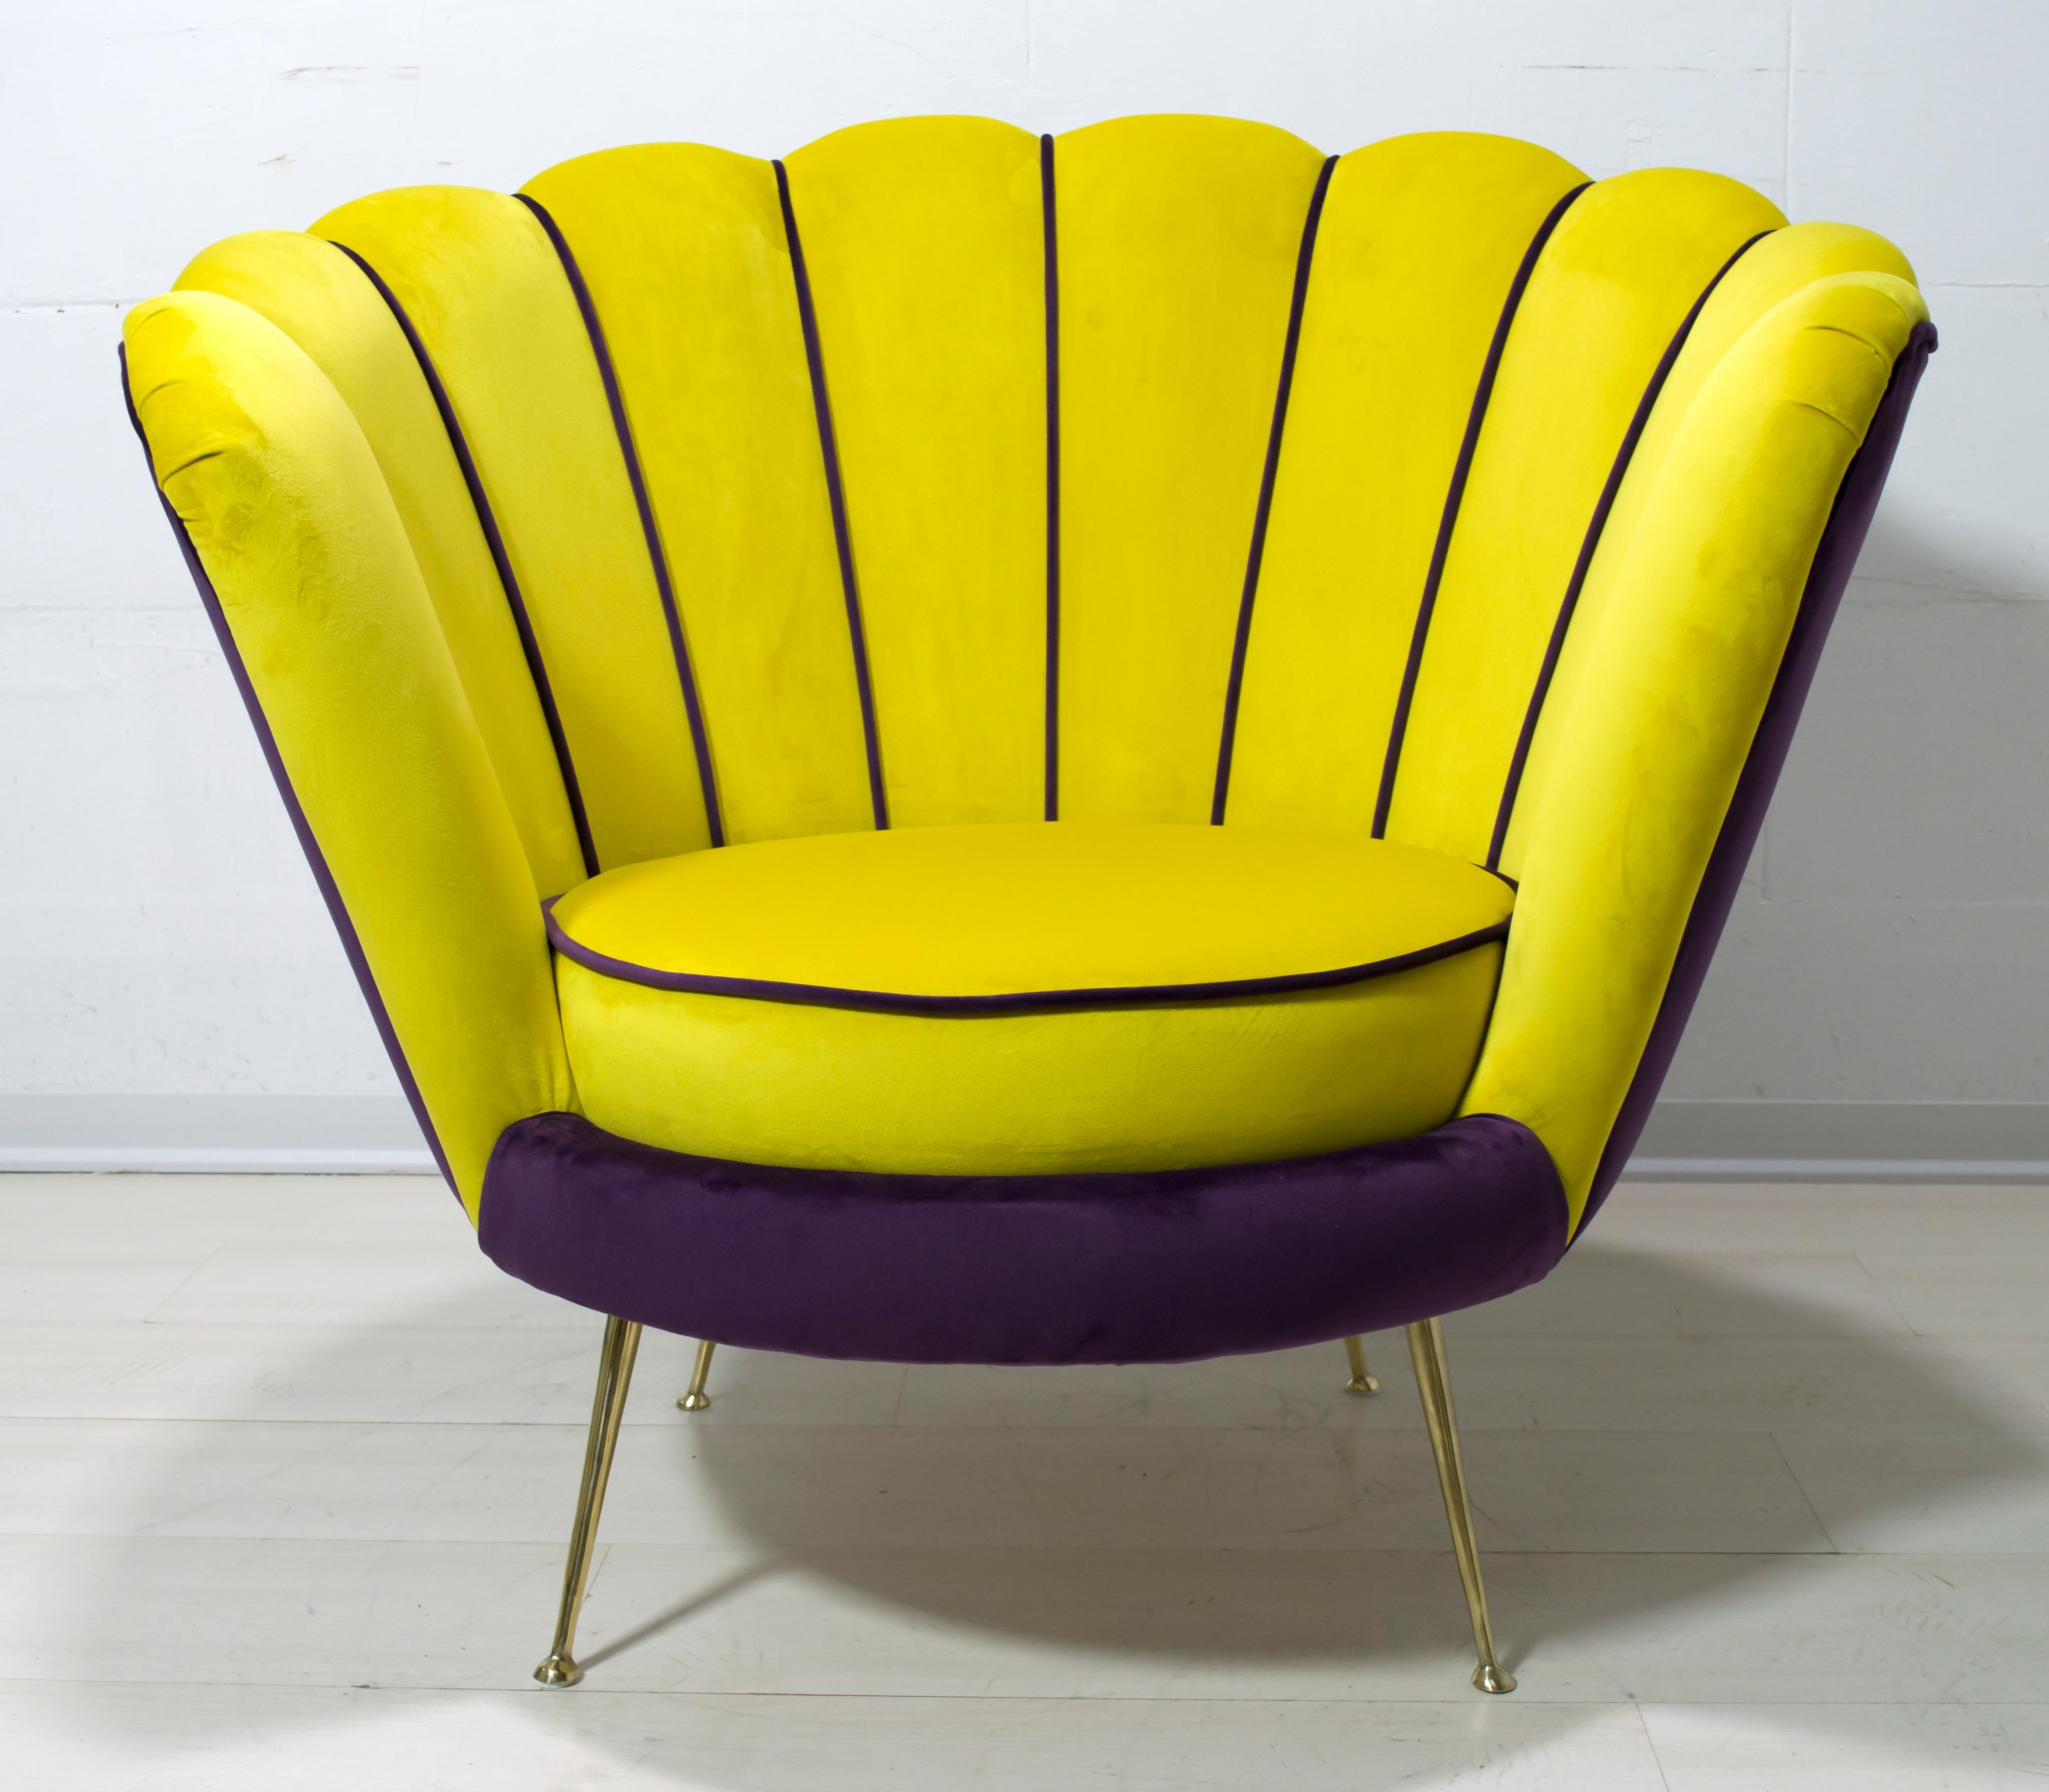 Radice & Minotti Sessel, komplett überarbeitet und restauriert
In der neuen italienischen Samtpolsterung, mit massiven Beinen aus handgearbeitetem Messing.
Der Sessel 